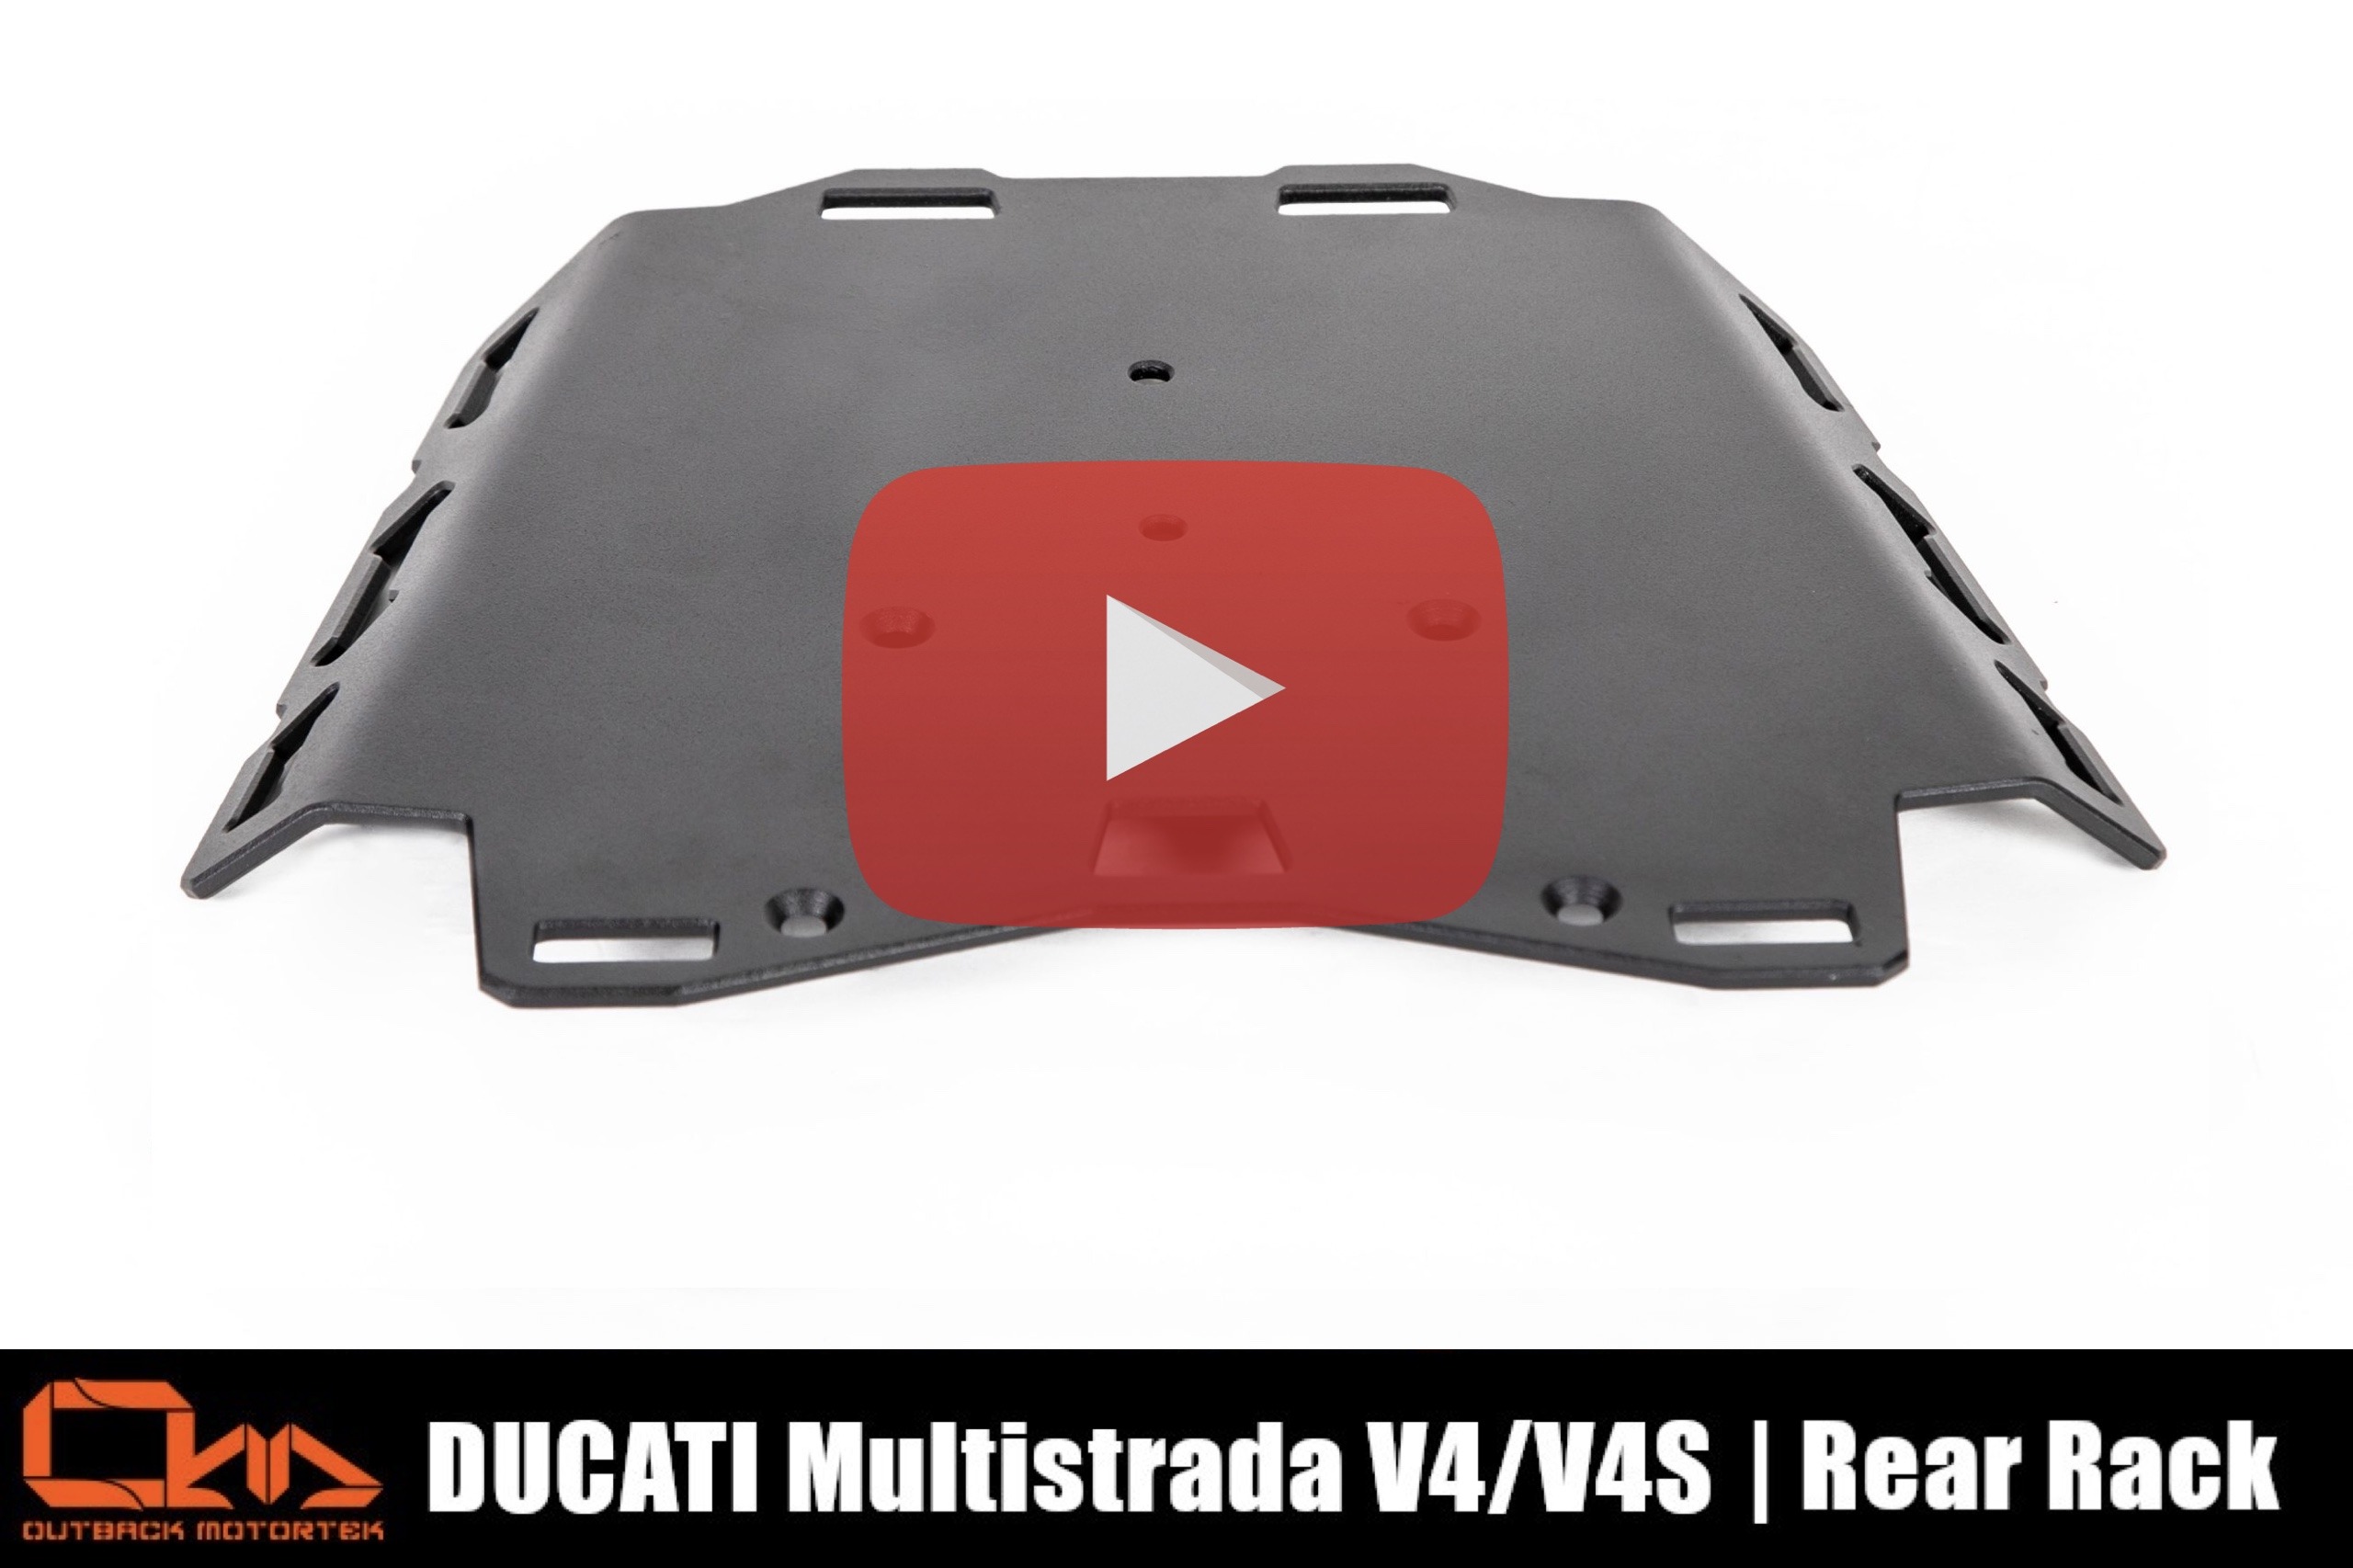 Ducati Multistrada V4 Rear Rack Installation Video